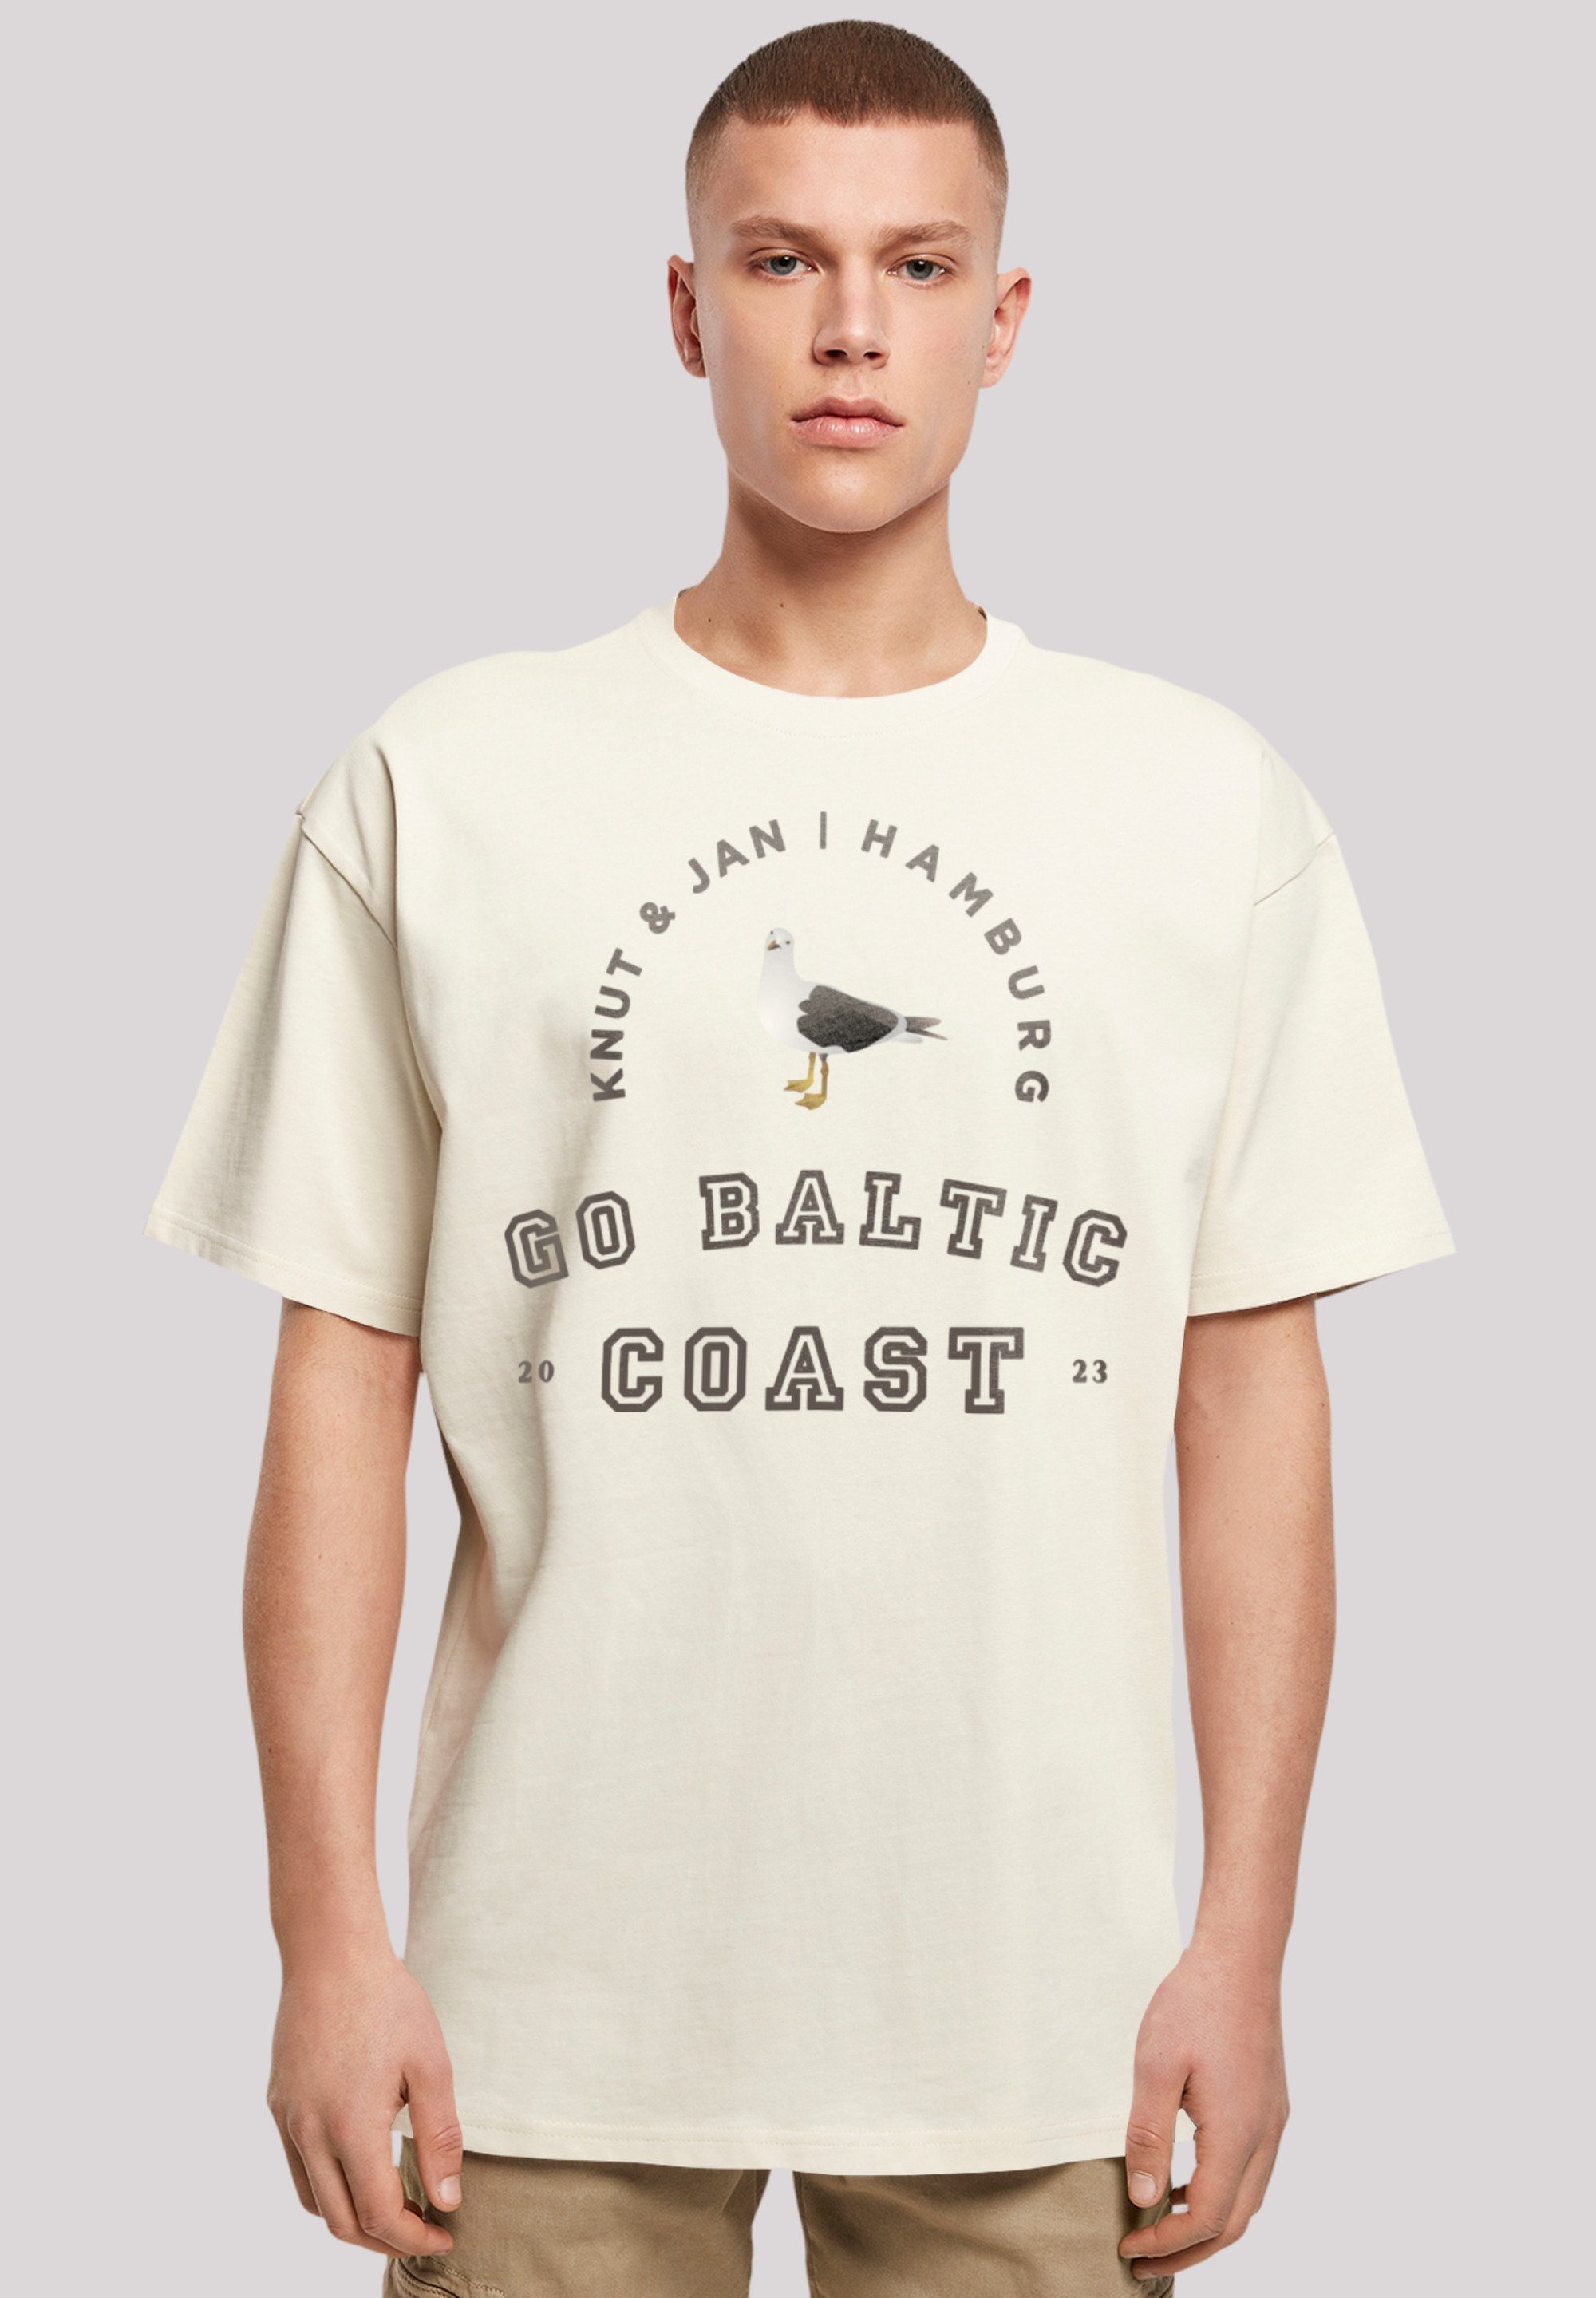 F4NT4STIC T-Shirt aus, Fällt Möwe Knut Jan Hamburg kleiner eine Print, bestellen bitte & Größe weit